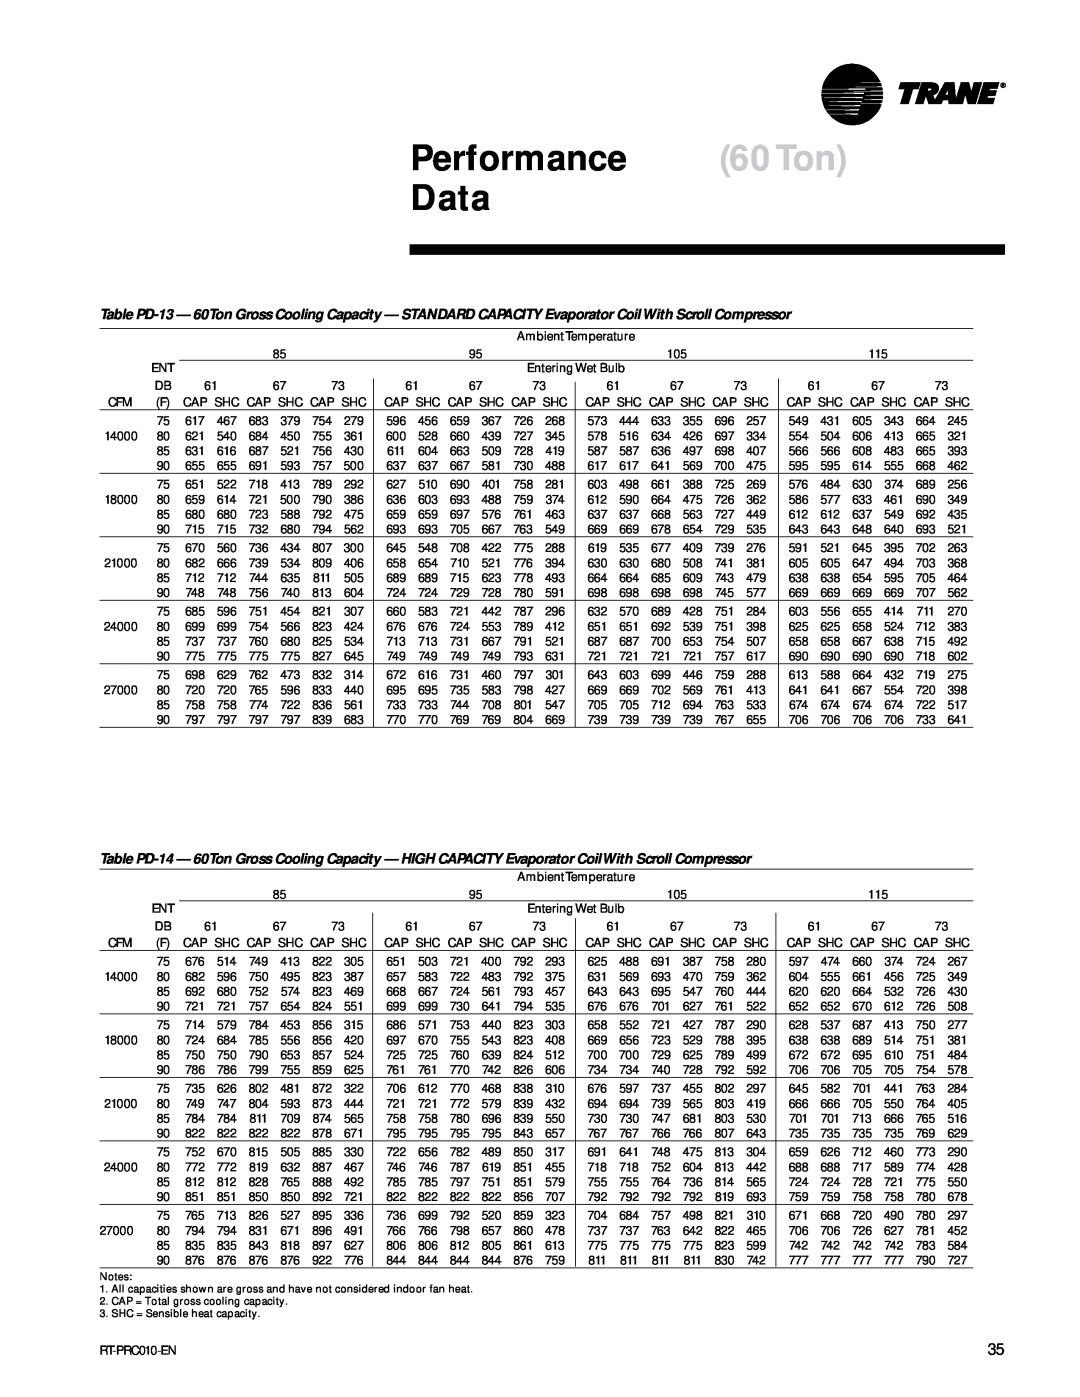 Trane RT-PRC010-EN manual Performance 60Ton Data 